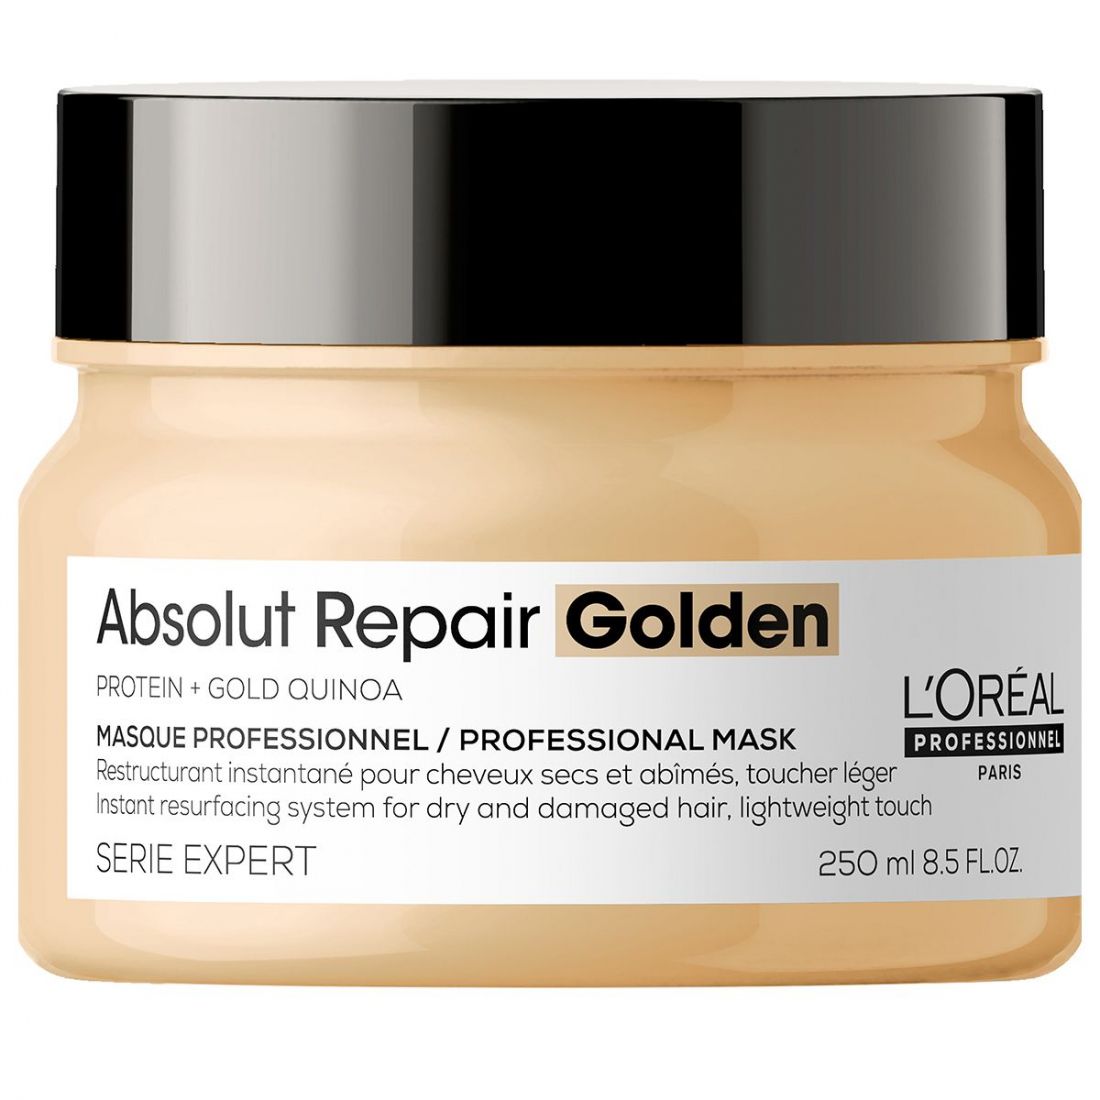 L'Oréal Professionnel Paris - Masque capillaire 'Absolut Repair Golden' - 250 ml